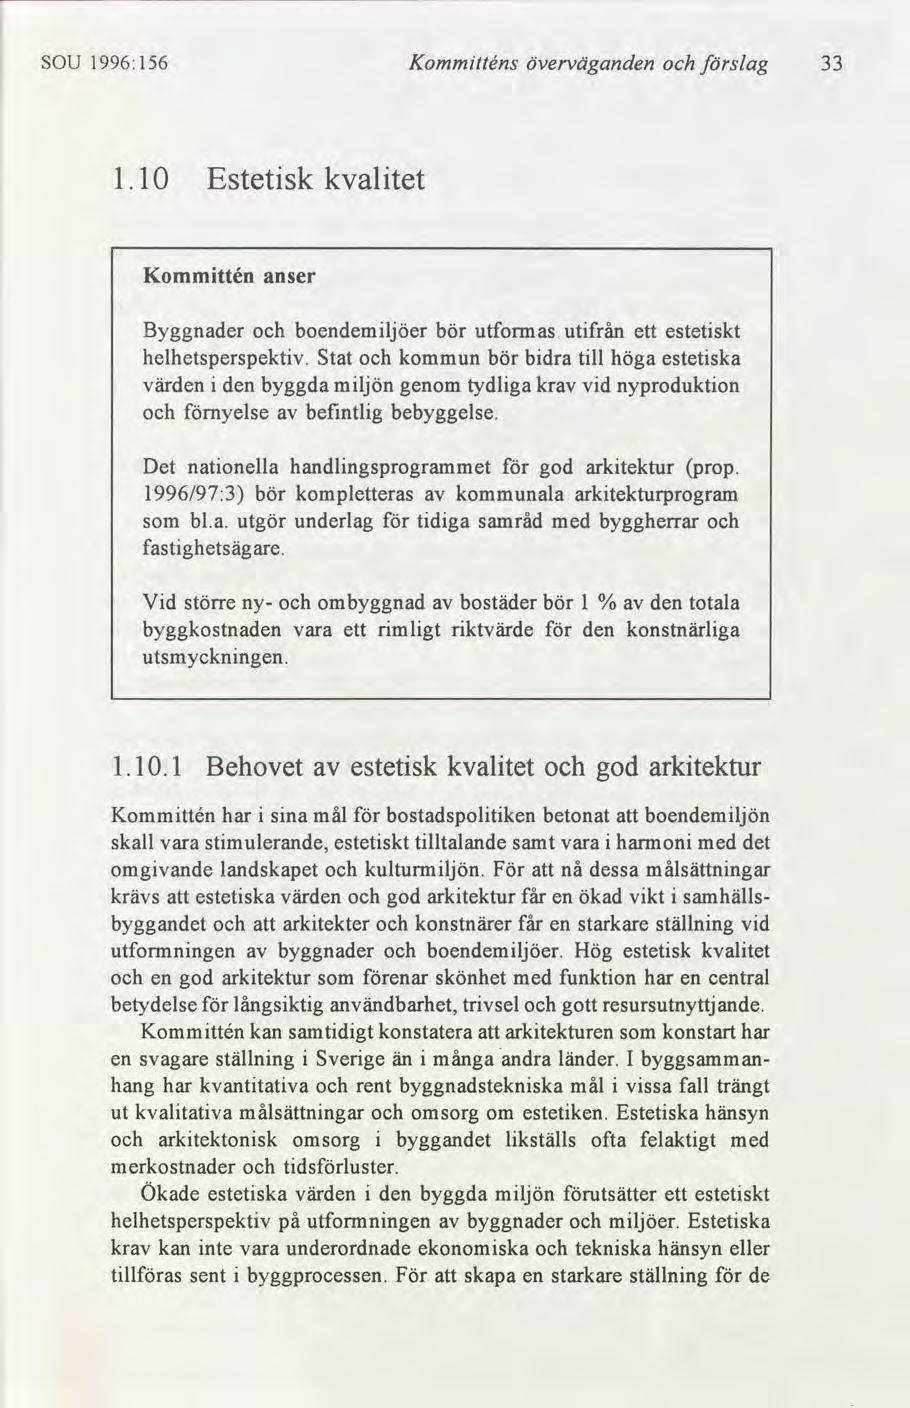 SOU 1996:156 Kommtténs överväganden slag 33 1.10 Estetsk kvaltet Kommttén anser Byggnader boendemljöer bör utformas utfrån estetskt ett helhetsperspektv.